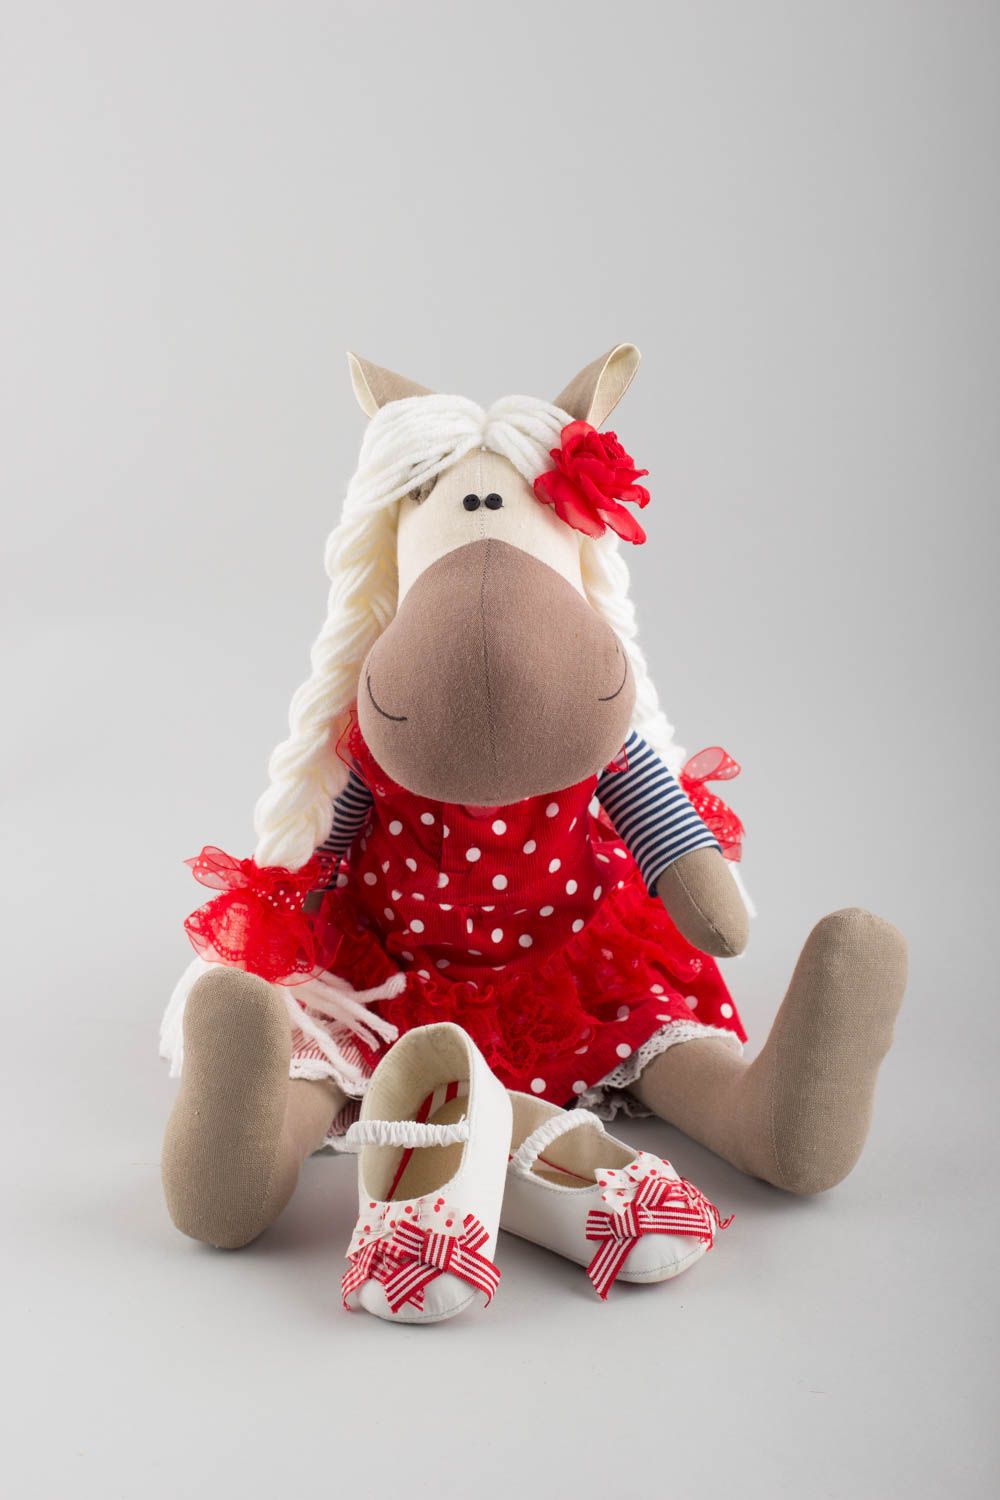 Textil Kuscheltier Pferd niedlich Spielzeug für Kinder und Dekor nette Seefrau foto 4